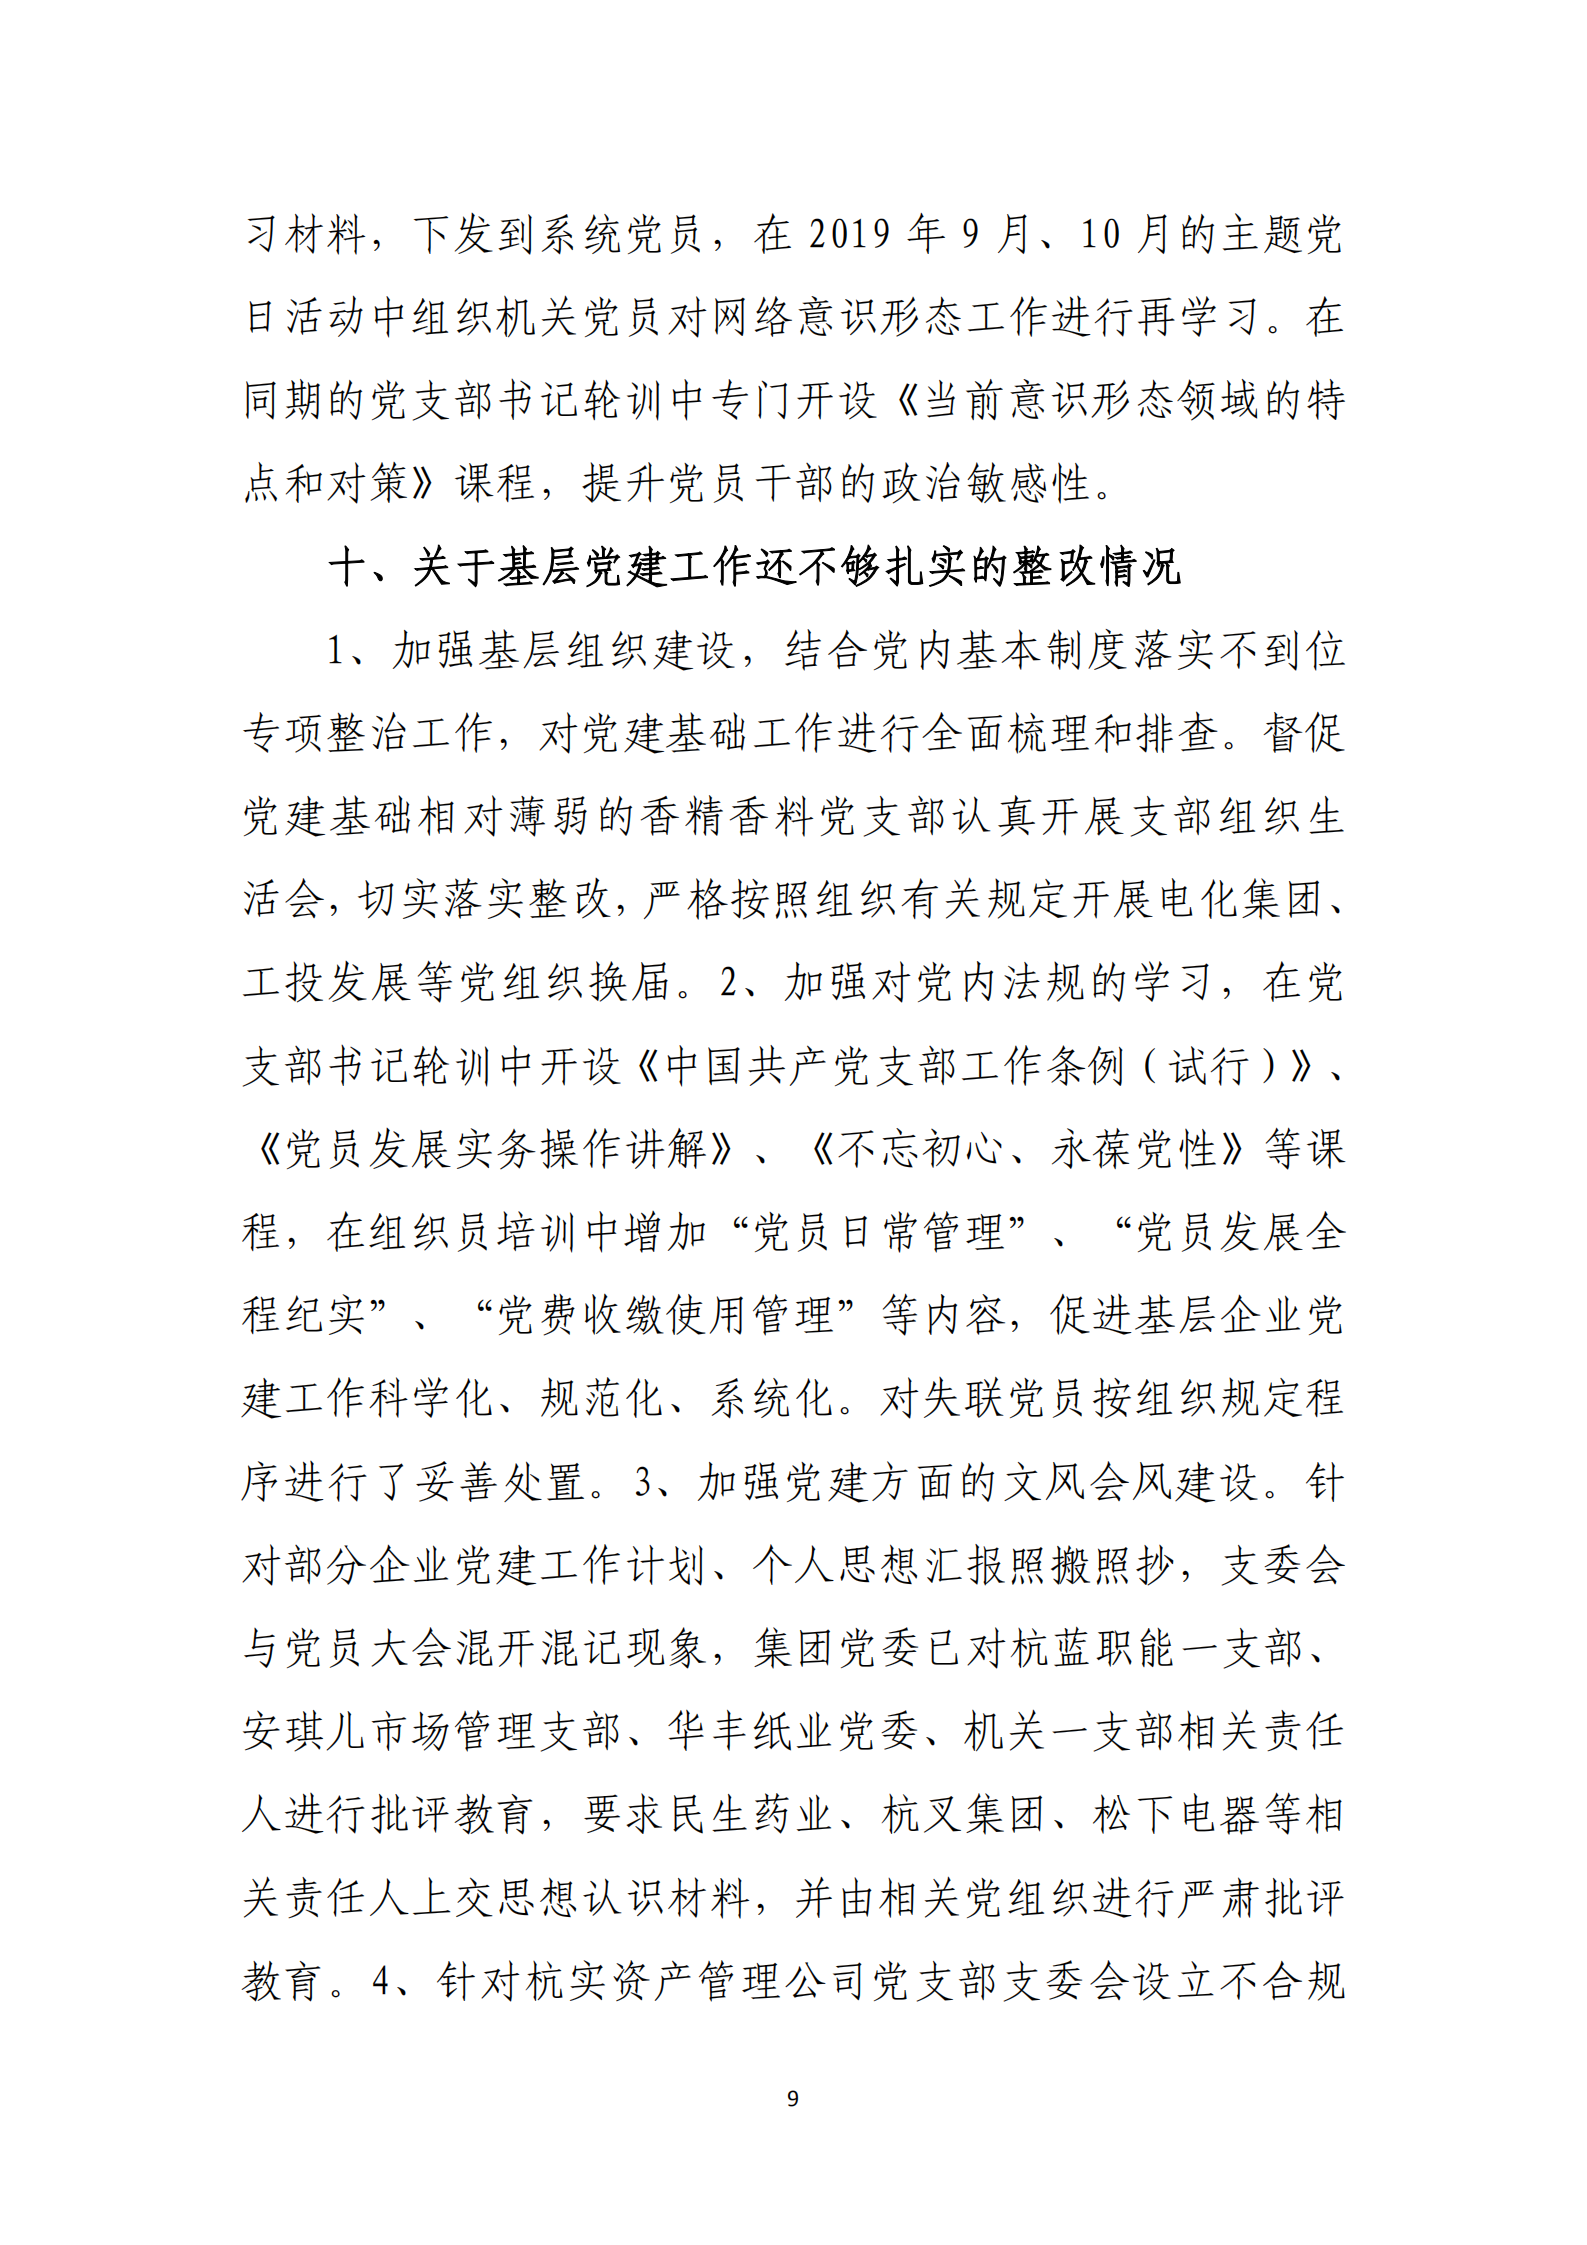 大阳城集团娱乐游戏党委关于巡察整改情况的通报_08.png